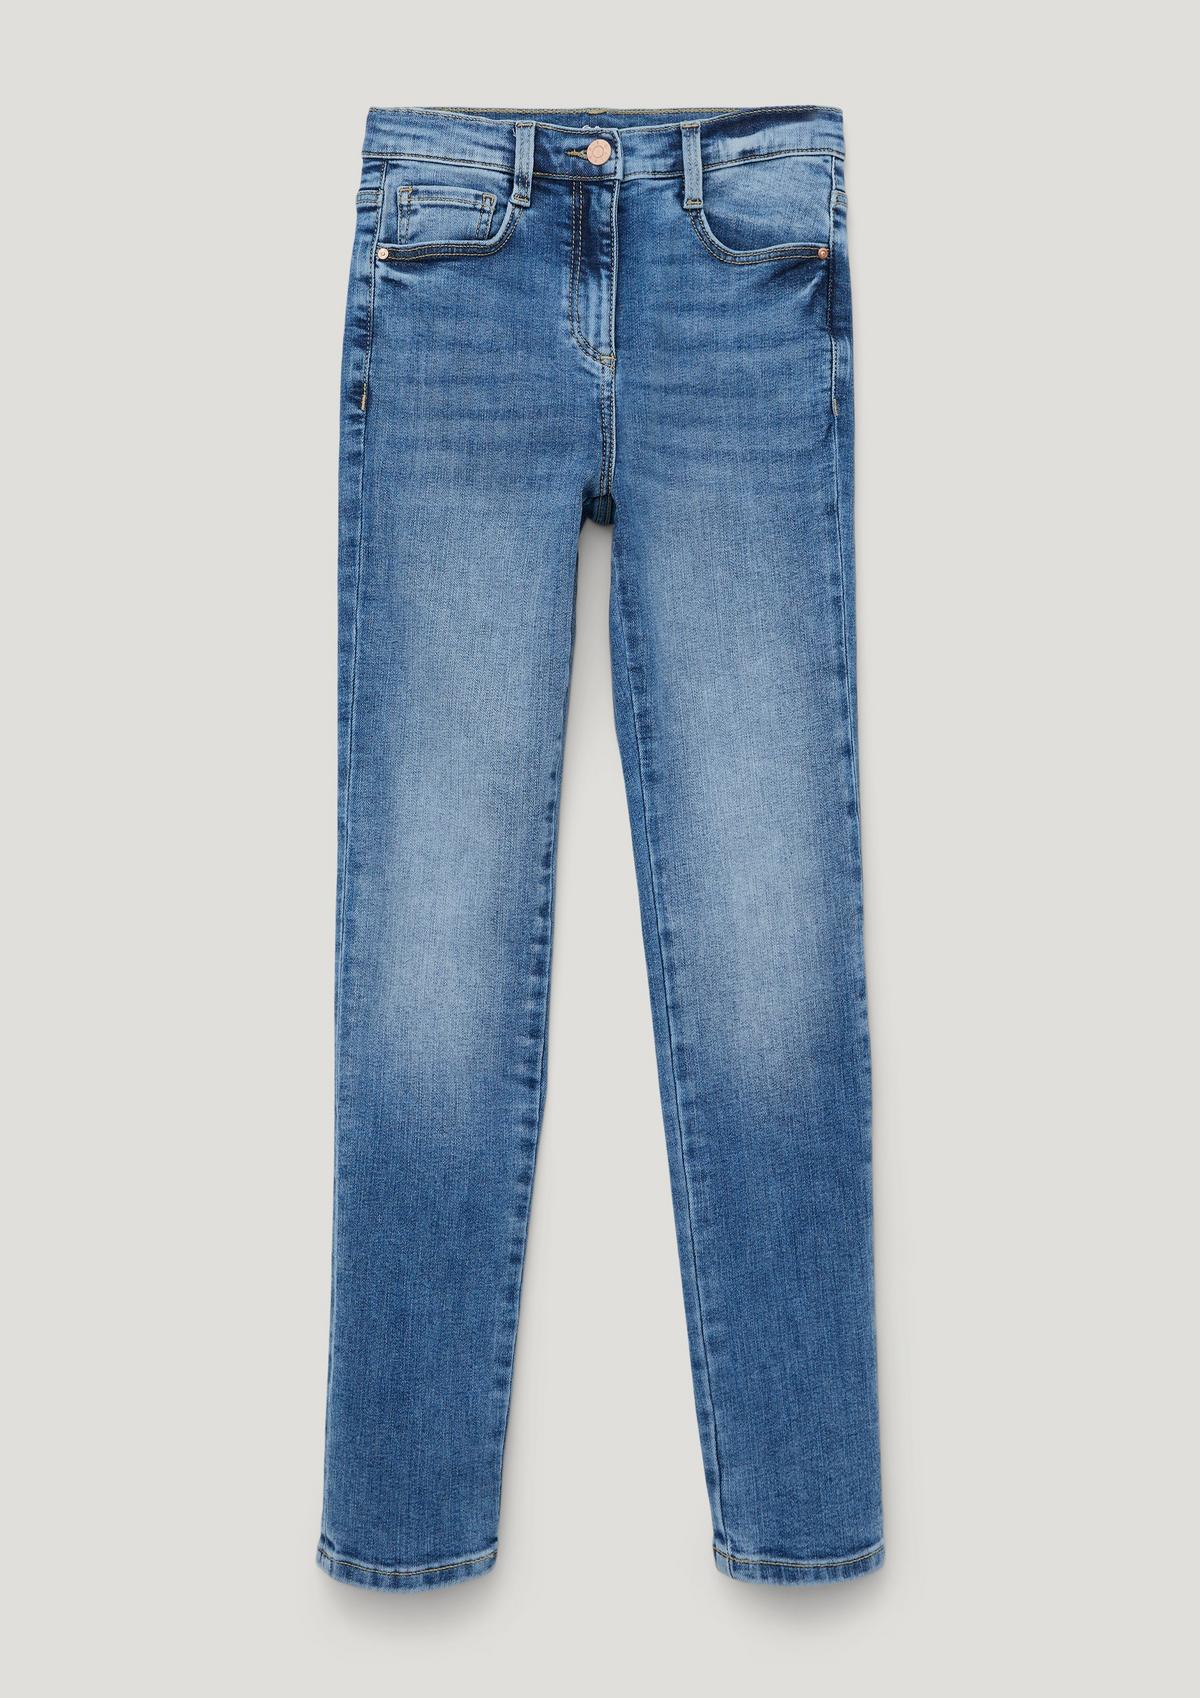 s.Oliver Ankle-Jeans Suri / Regular Fit / High Rise / Slim Leg